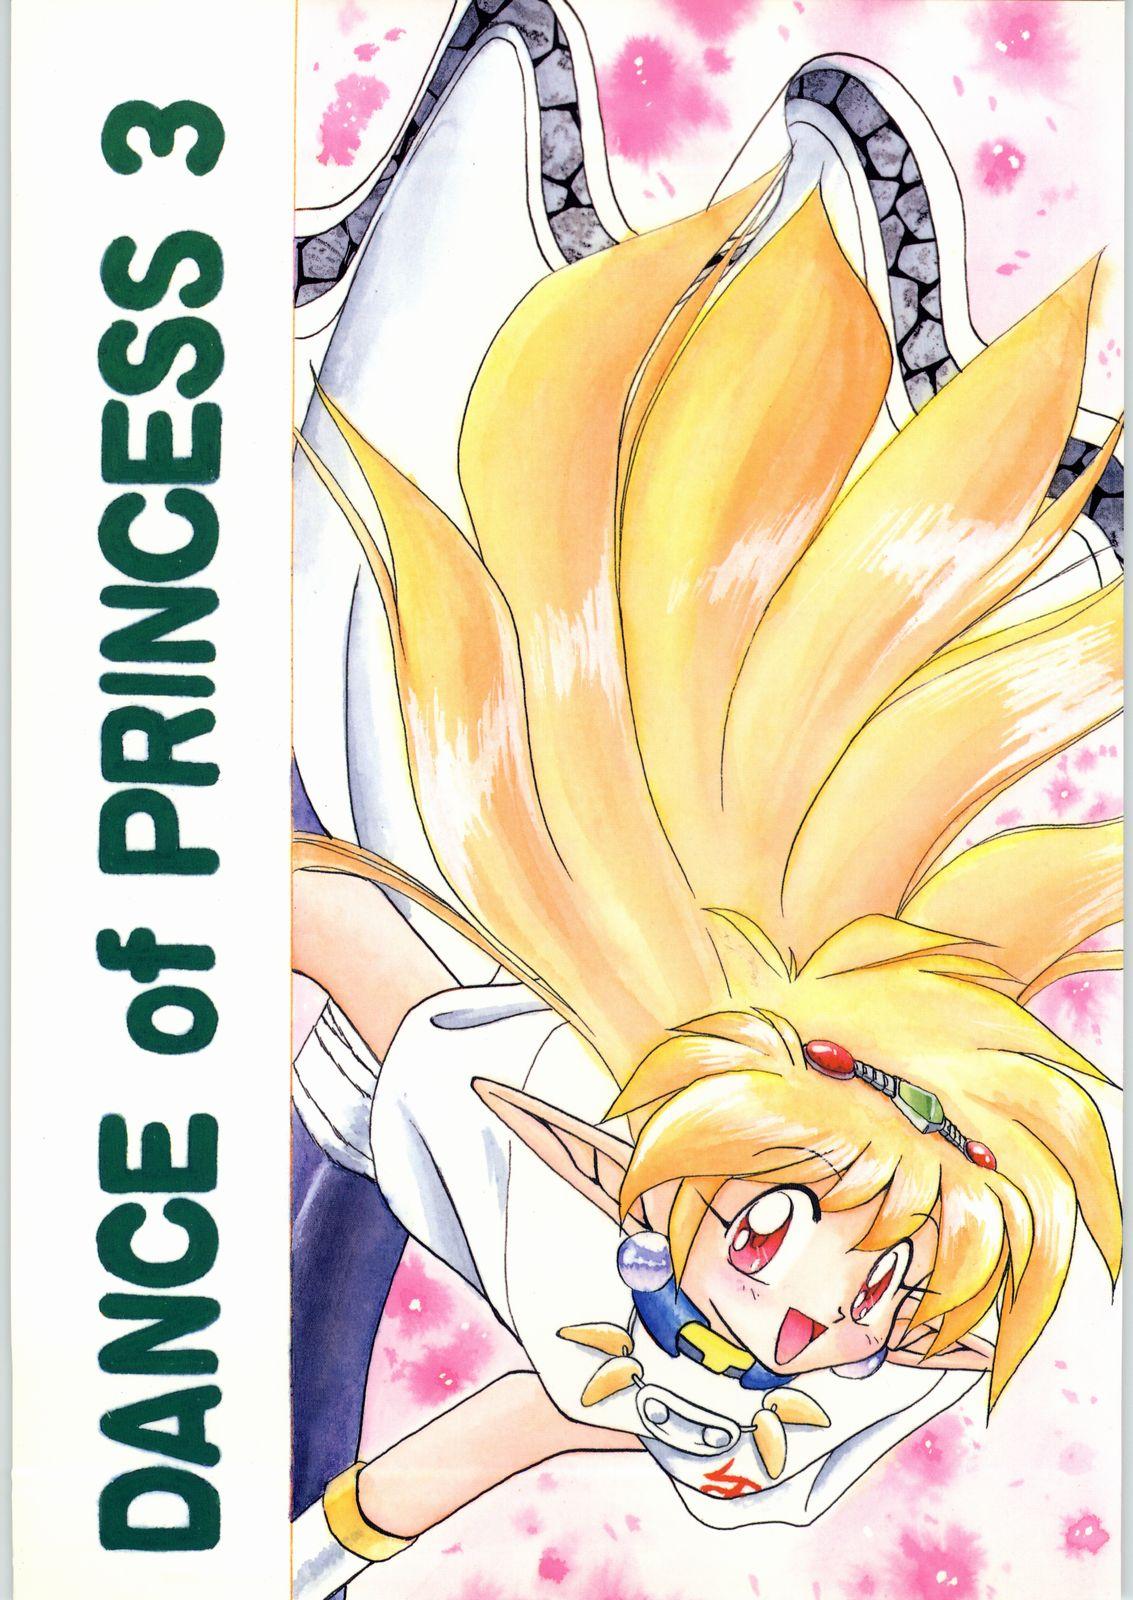 Longhair Dance of Princess 3 - Sailor moon Tenchi muyo Akazukin cha cha Minky momo Ng knight lamune and 40 Smoking - Page 1